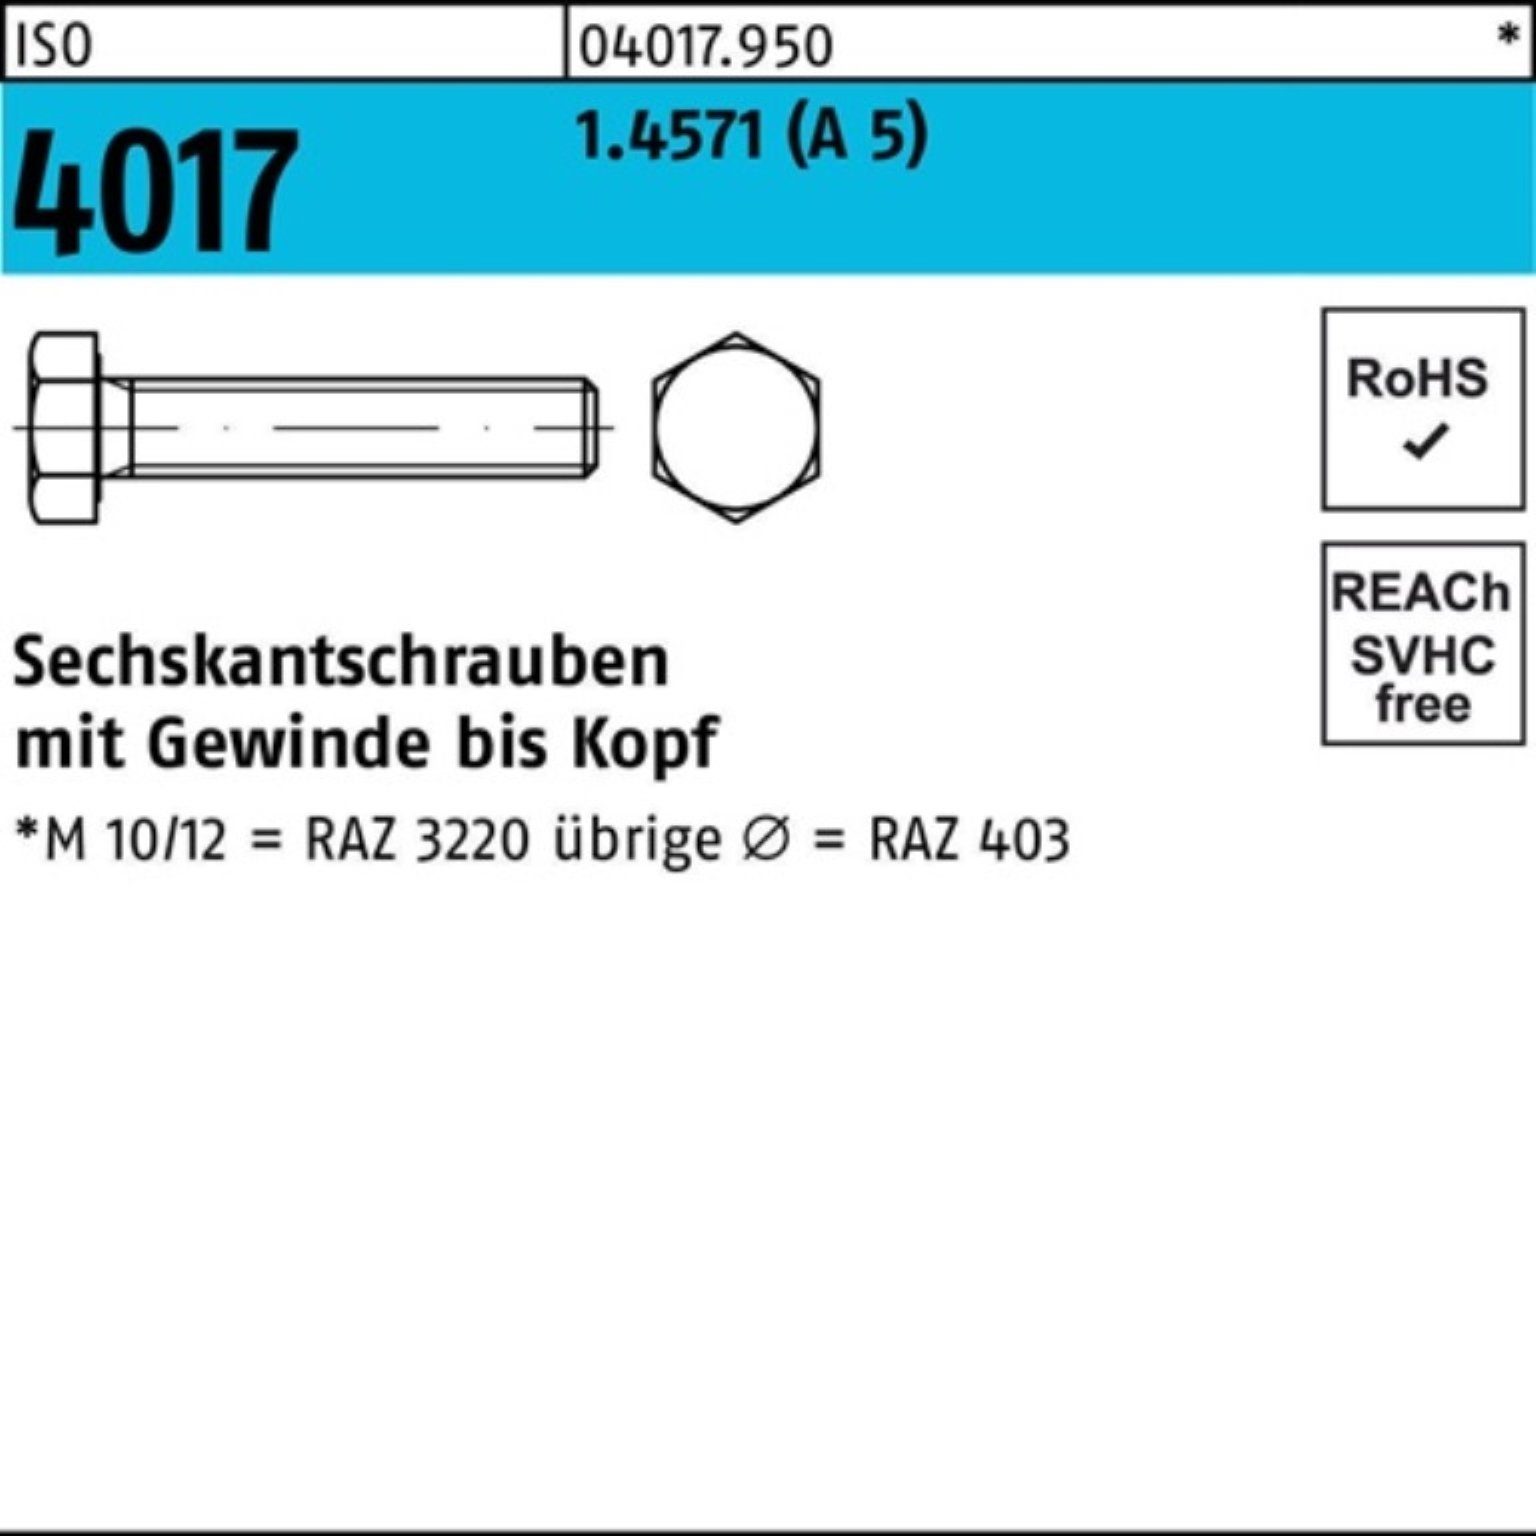 Bufab Sechskantschraube 100er Pack Stück M16x A 4017 1 30 4017 Sechskantschraube 5 ISO ISO VG